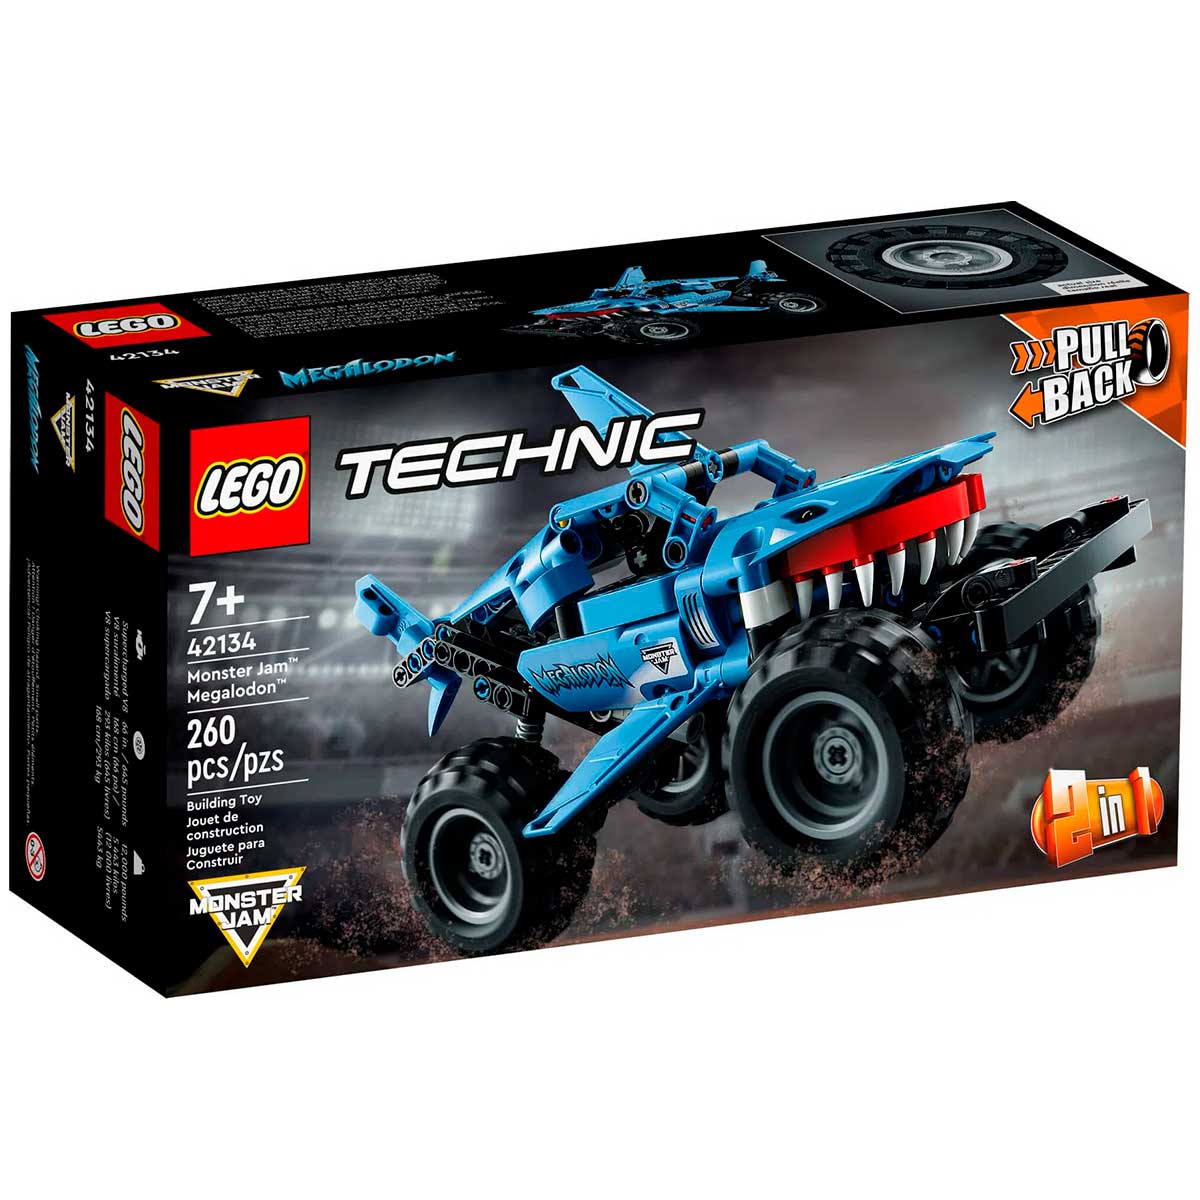 LEGO Technic - Monster Jam™ Megalodon™ - 42134